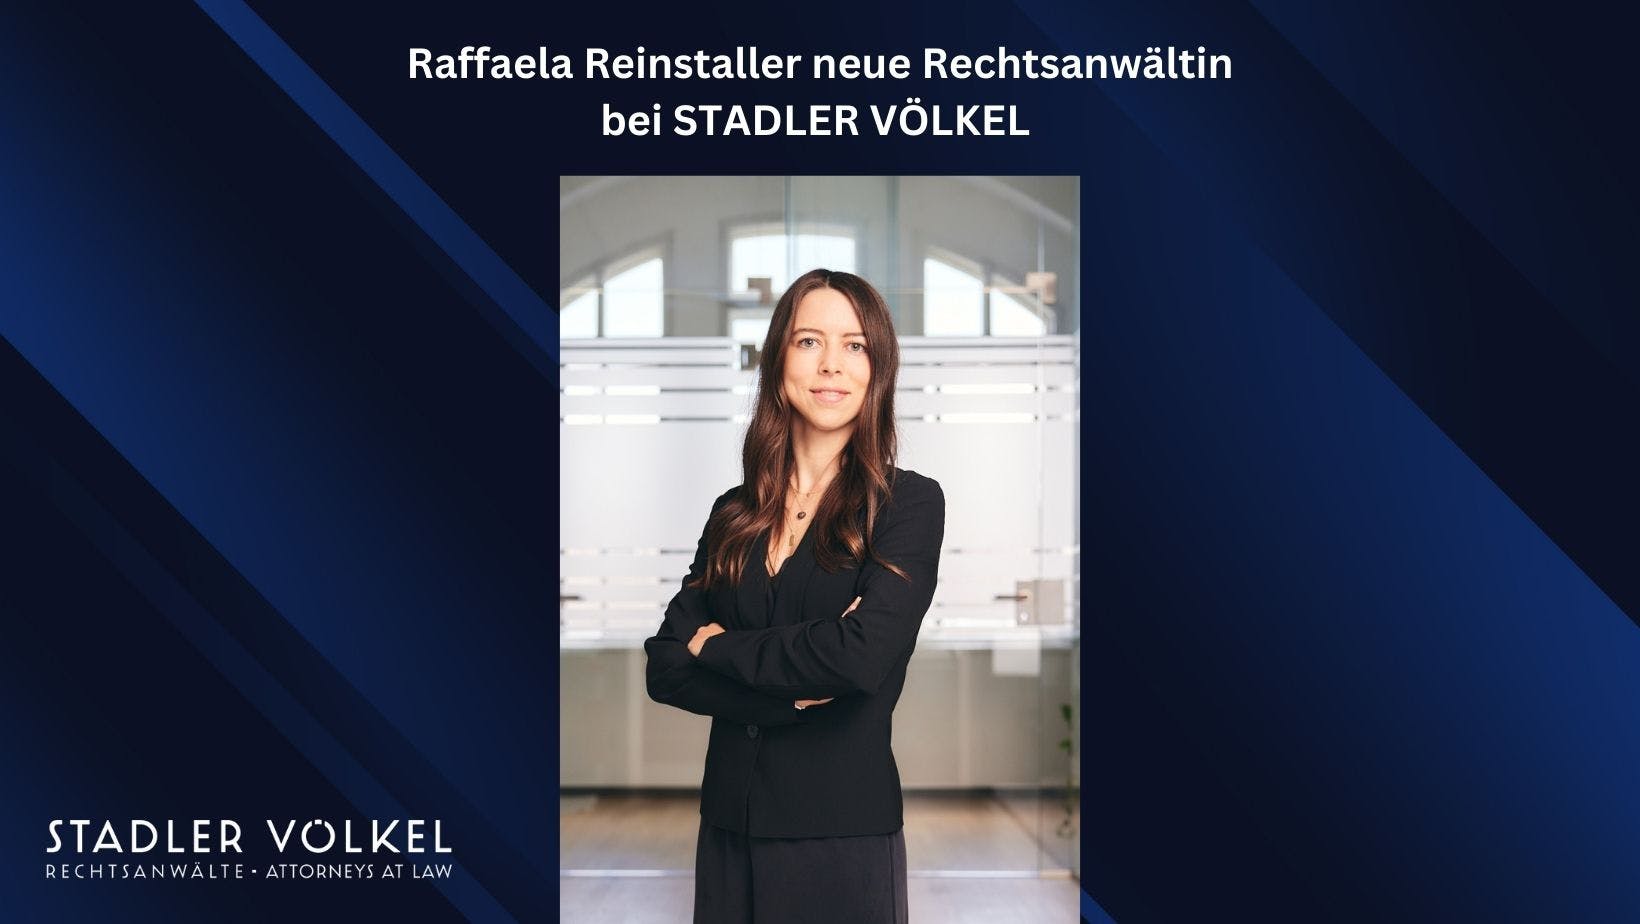 Raffaela Reinstaller neue Rechtsanwältin bei STADLER VÖLKEL